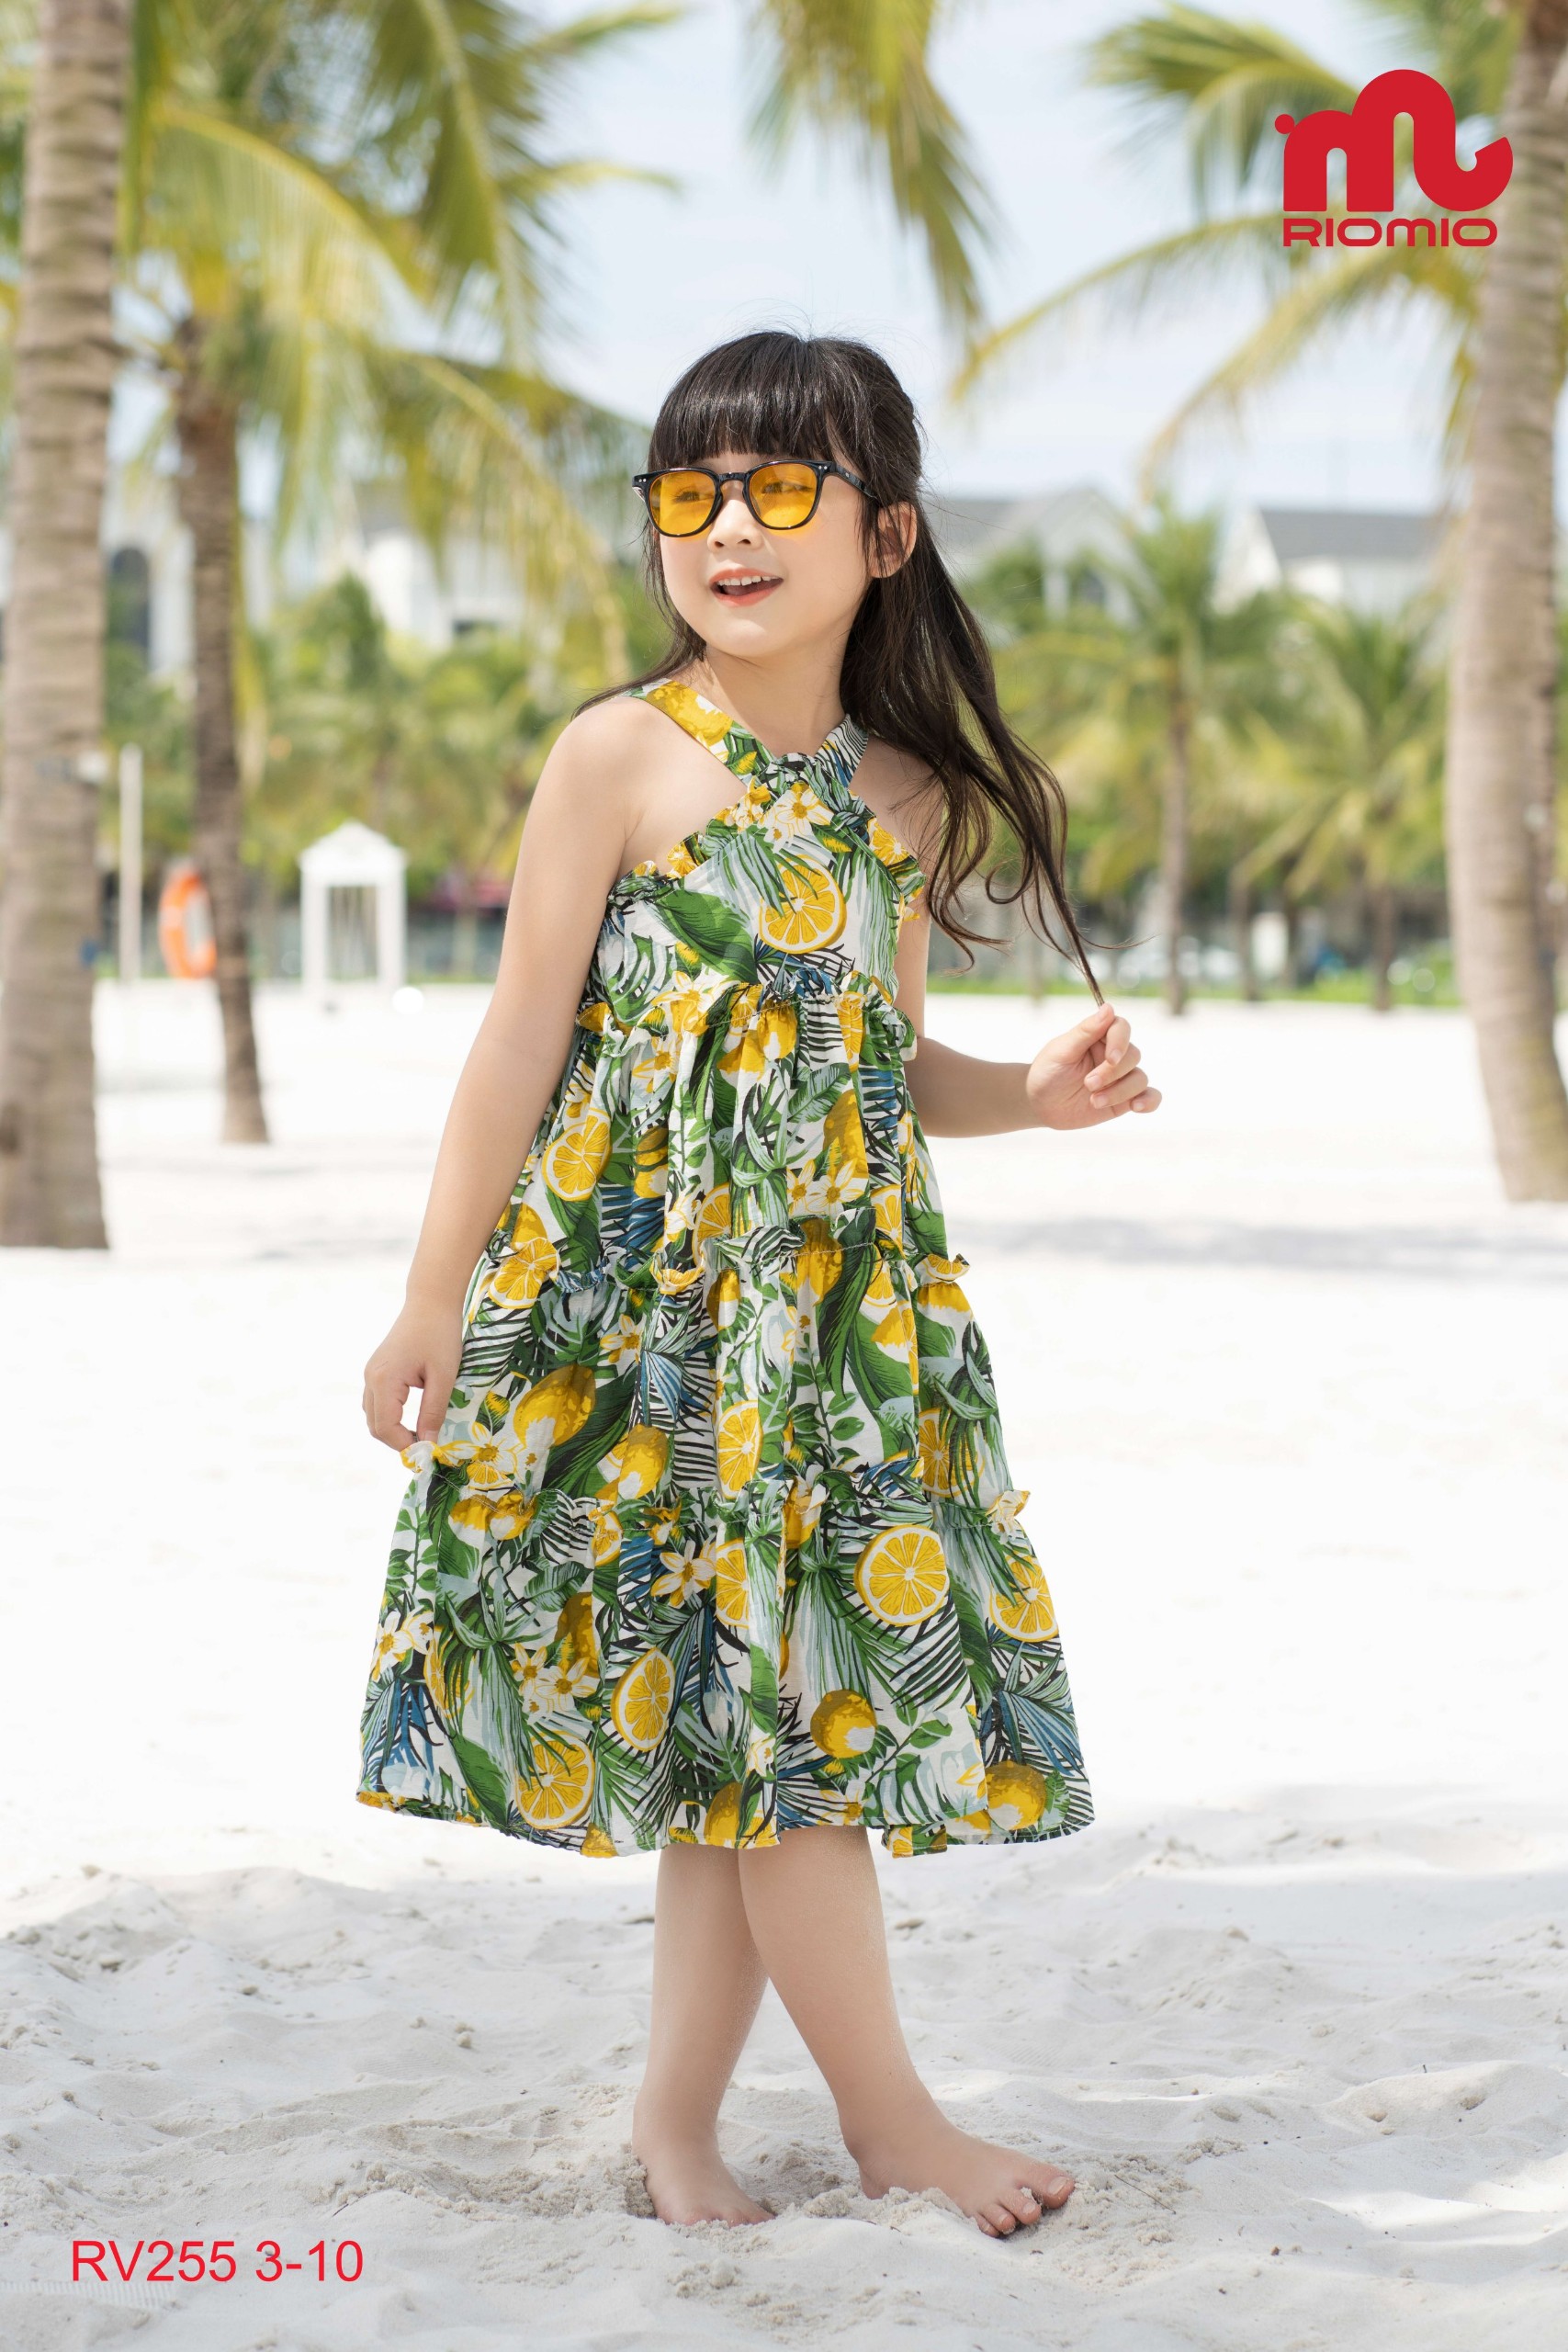 Váy đi biển cho bé gái 3-11 tuổi (15-40kg) RIOMIO 2 dây vải đũi họa tiết hoa quả xinh xắn - RV255